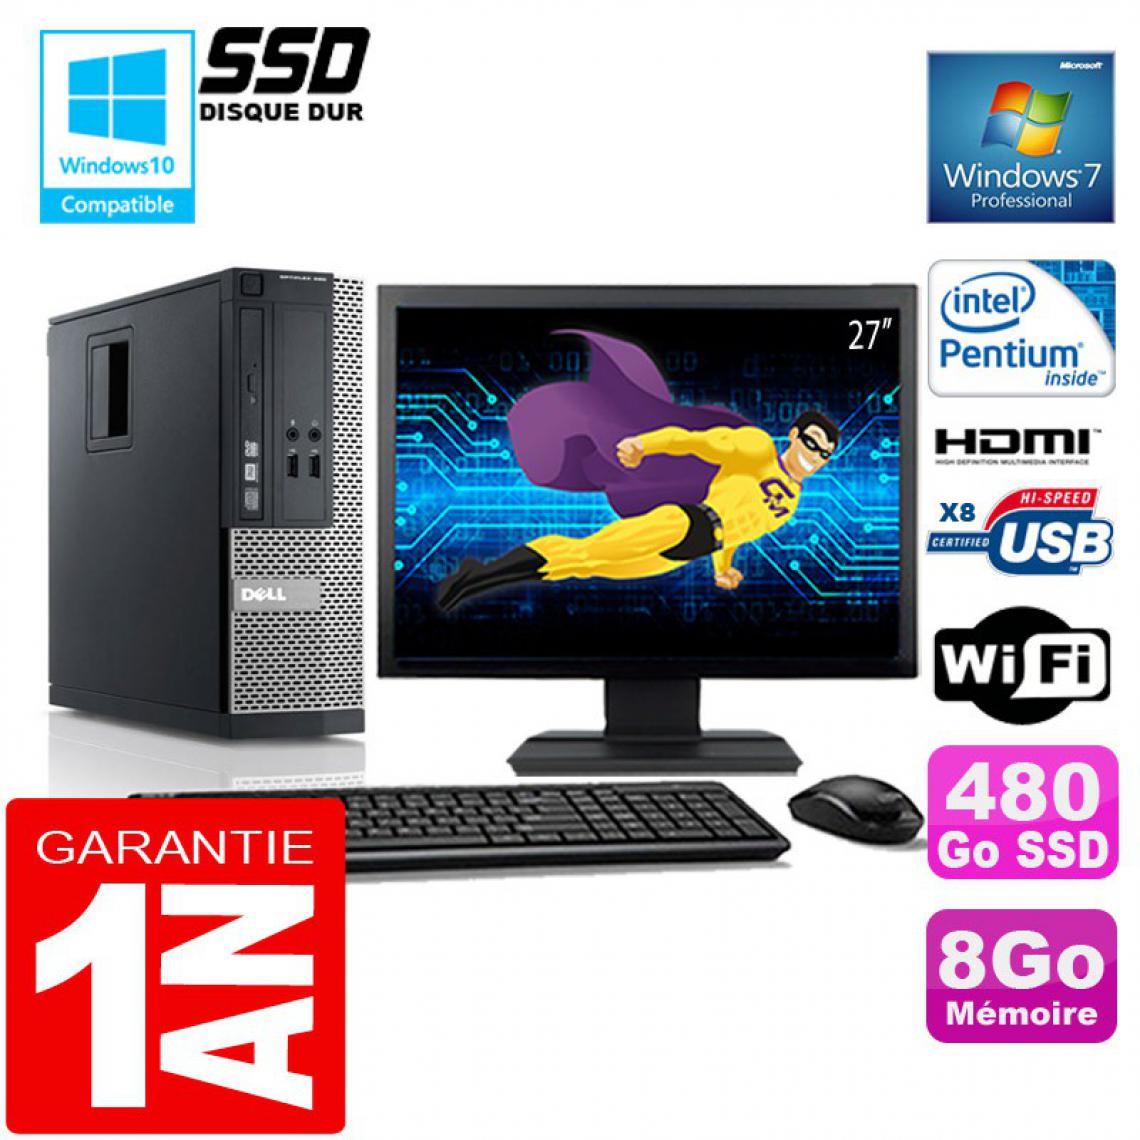 Dell - PC DELL 390 SFF Intel G630 Ram 8Go Disque 480 Go SSD Wifi W7 Ecran 27" - PC Fixe